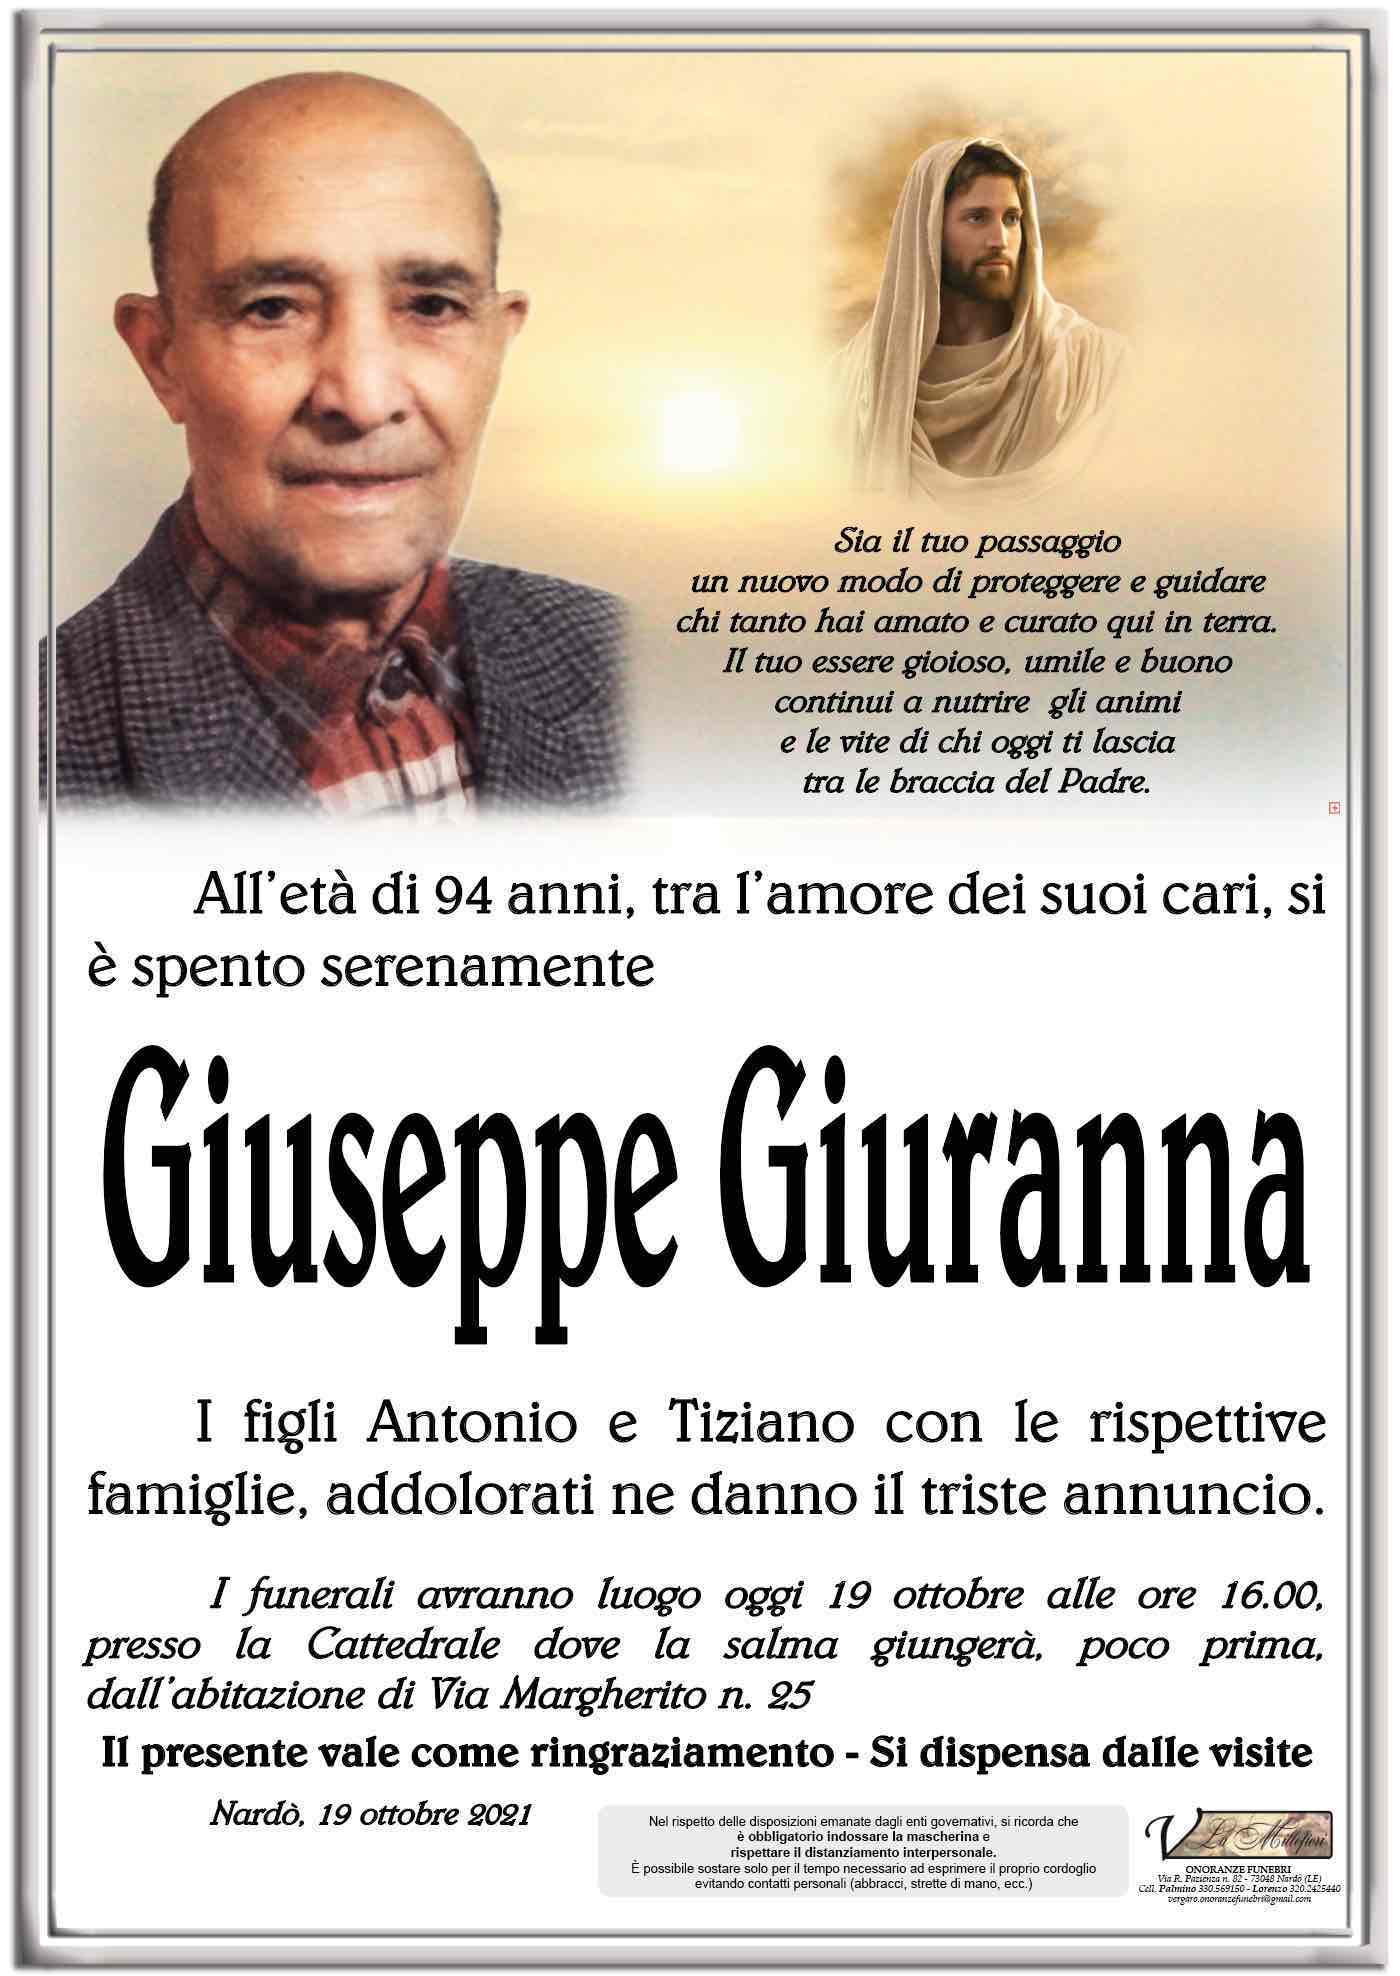 Giuseppe Giuranna